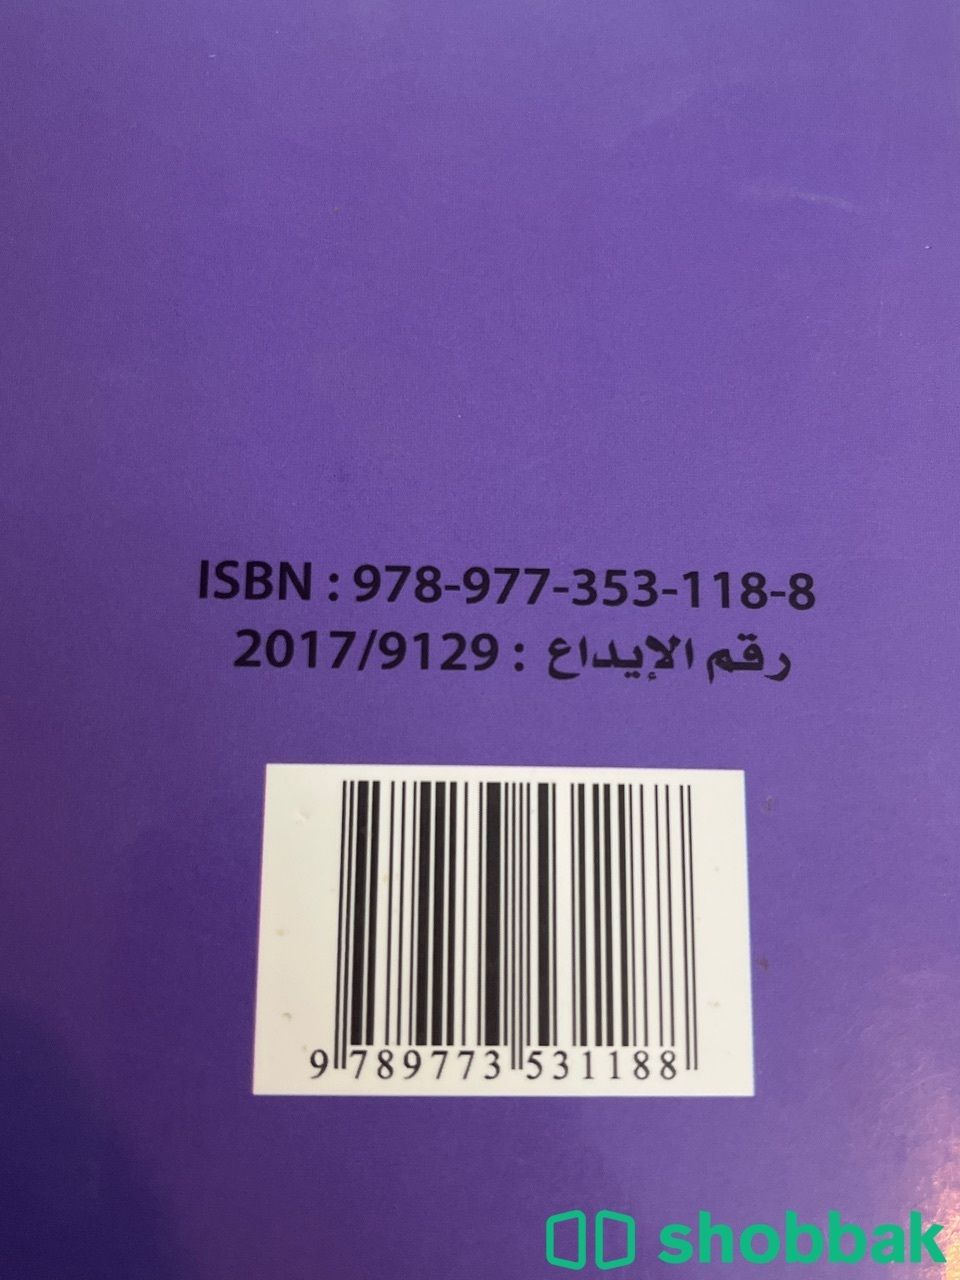 كتاب سوشيال قريد ٣ .. كتب مدارس عالمية Shobbak Saudi Arabia